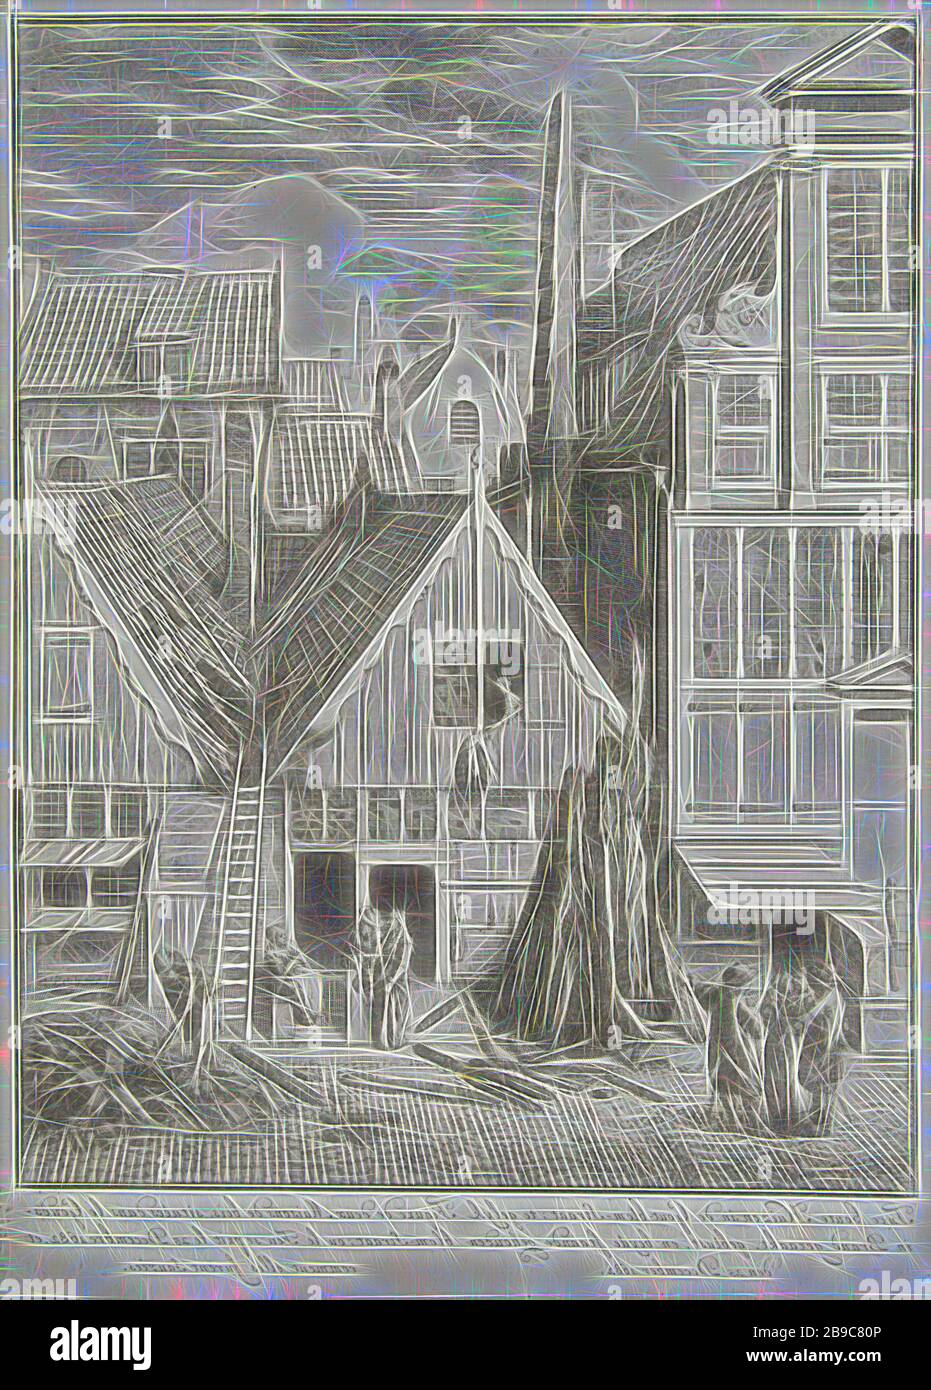 Ausgebrannte Häuser in der Goudsbloemstraat in Amsterdam, 1682 Zwei  Holzhäuser in der Gicht - Blom-Straat, fing Feuer sind erloschen, und hielt  am 25. Dezember 1682/Abbildung de deux Maisons de Bois, Situation der